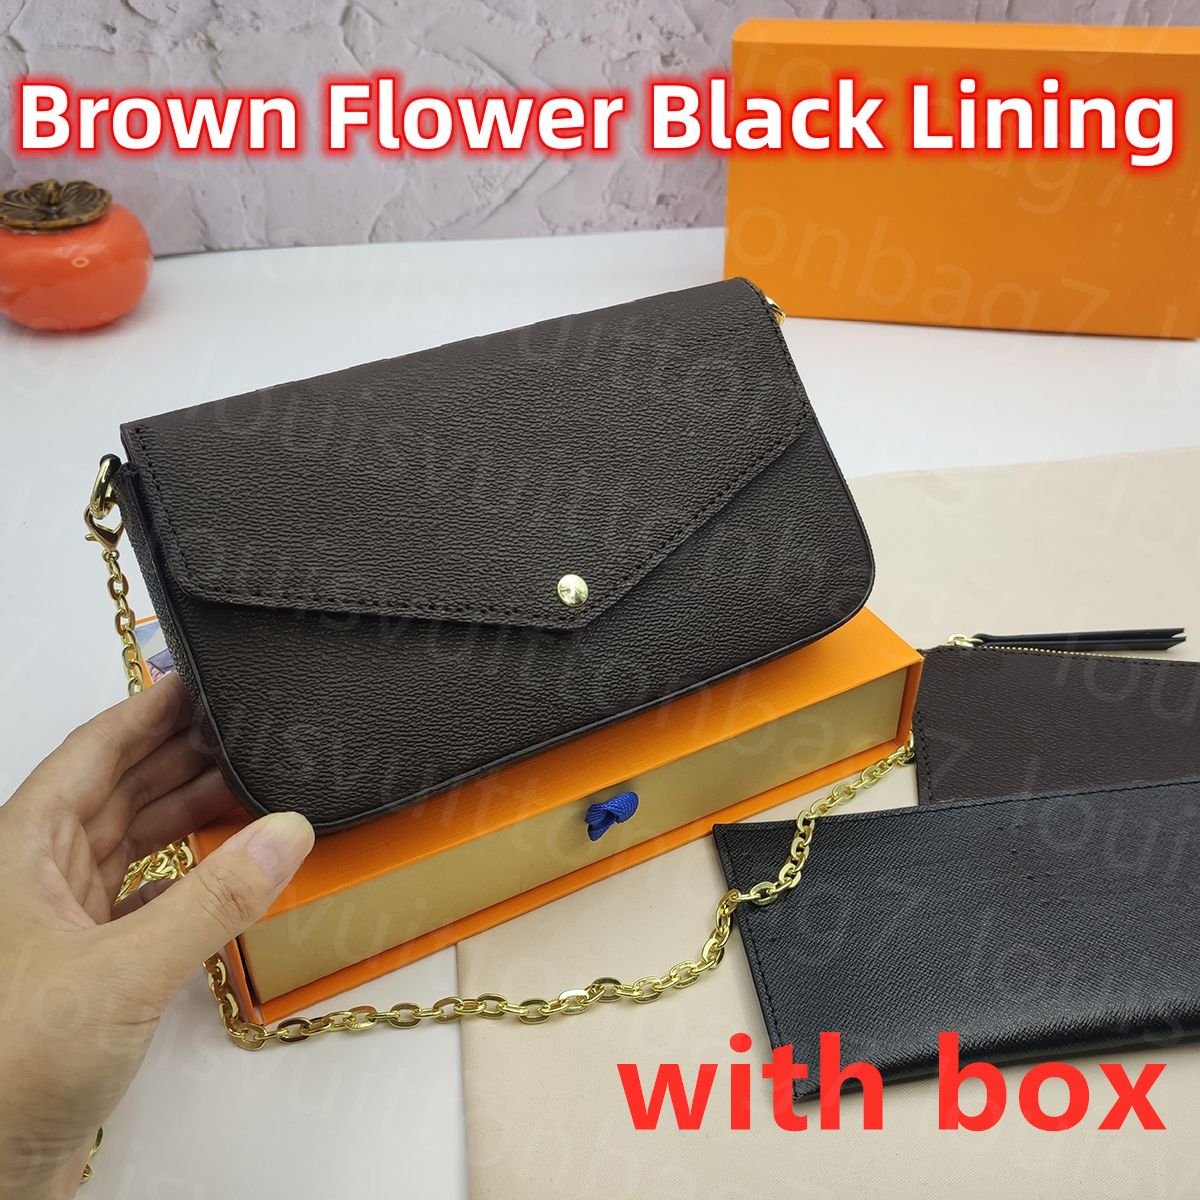 Brown Flower Black Lining